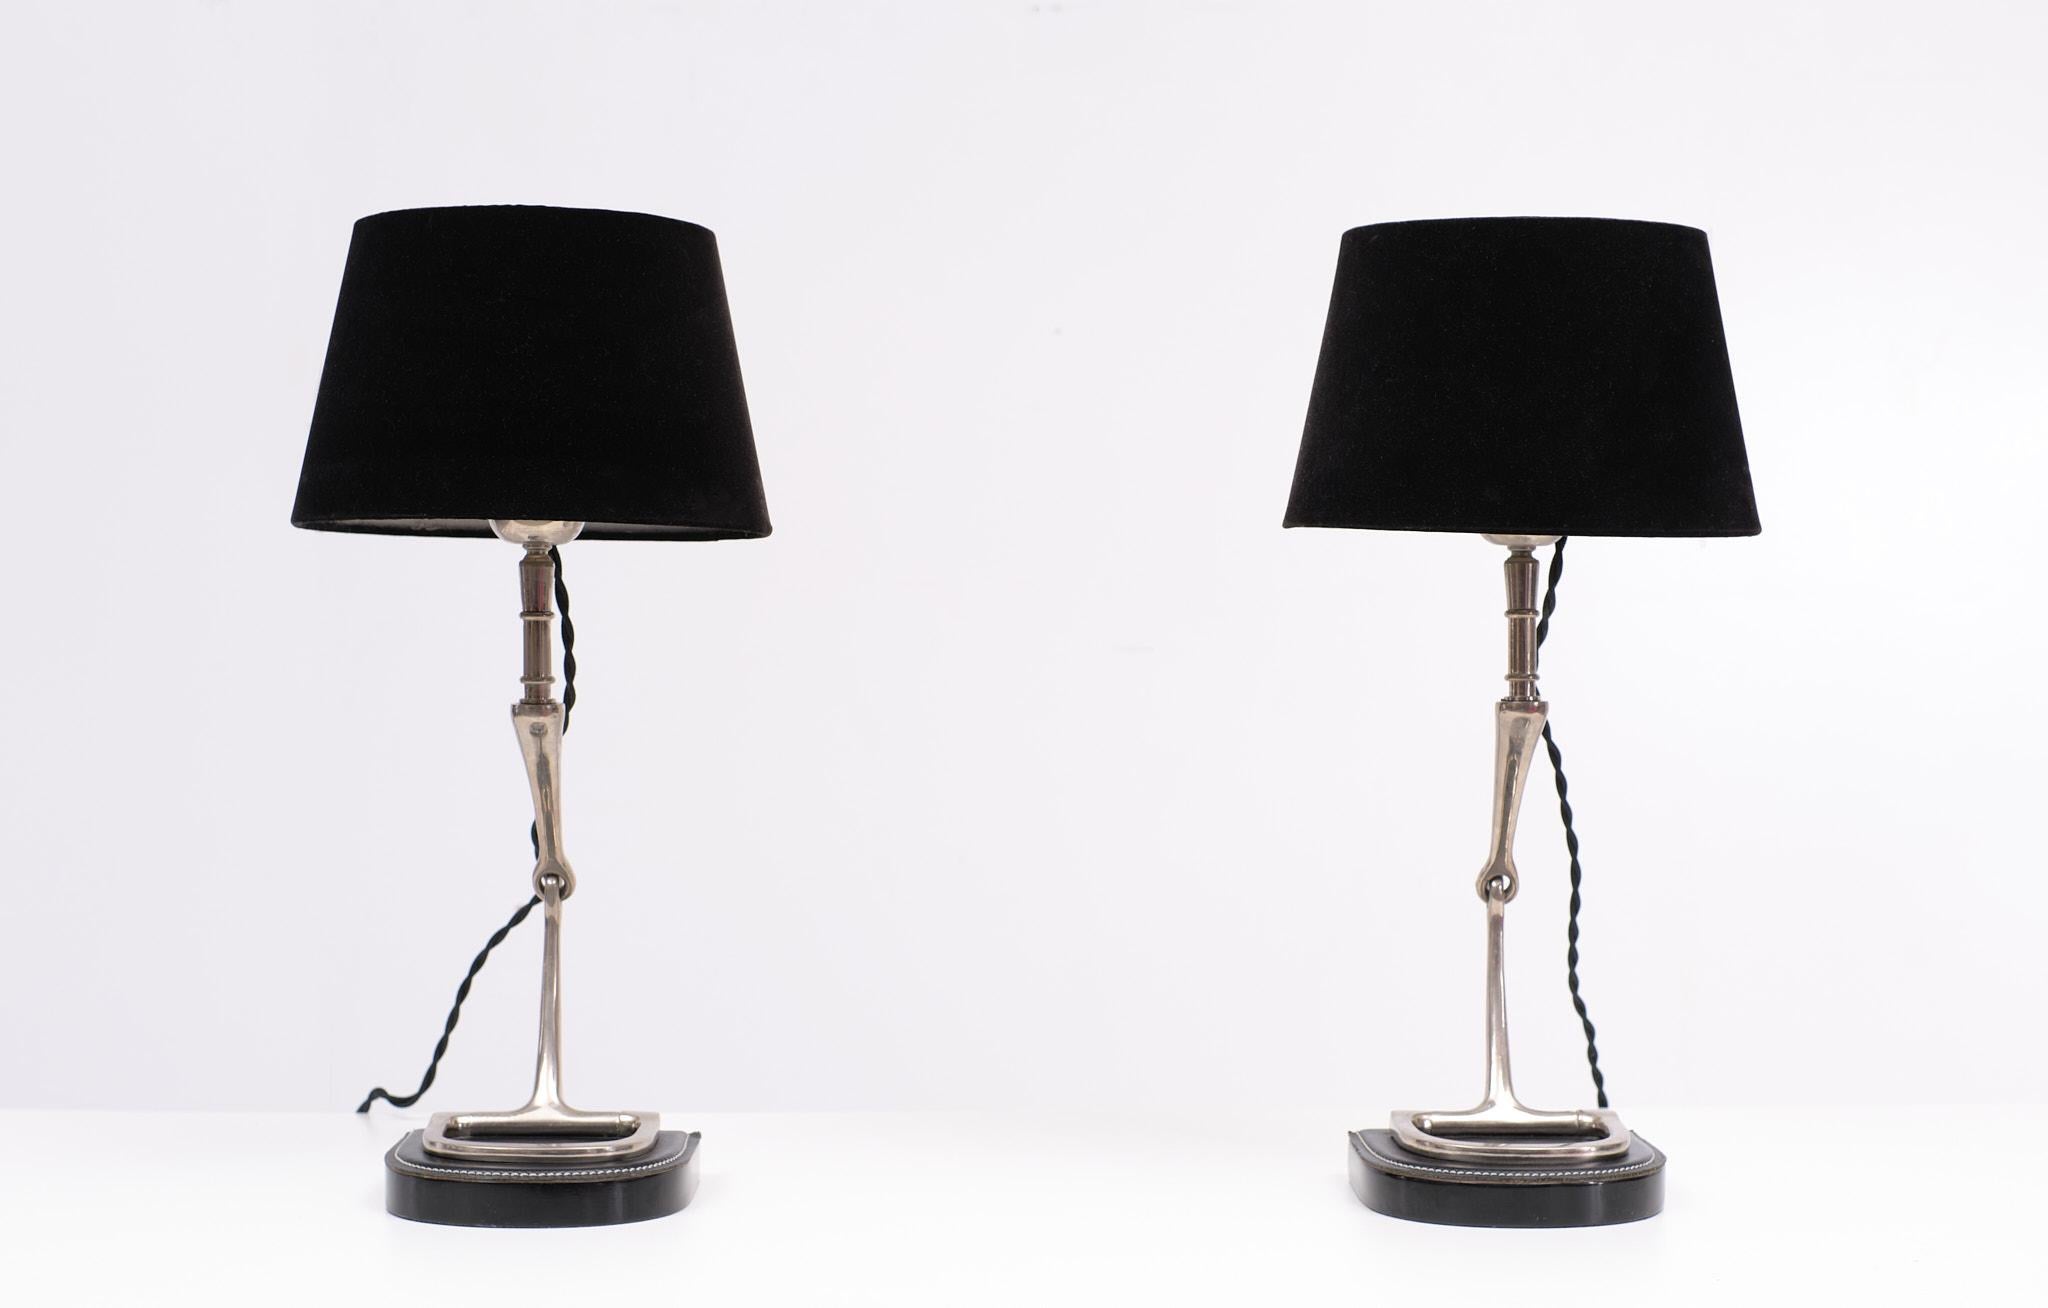 Deux lampes de table exceptionnelles Etriers en chrome sur une base en cuir piqué, livrées avec une lampe de table. 
avec des nuances de velours noir. Très élégant. Grande ampoule E27 nécessaire. Fabriqué 
par l'entreprise de qualité Eicholtz